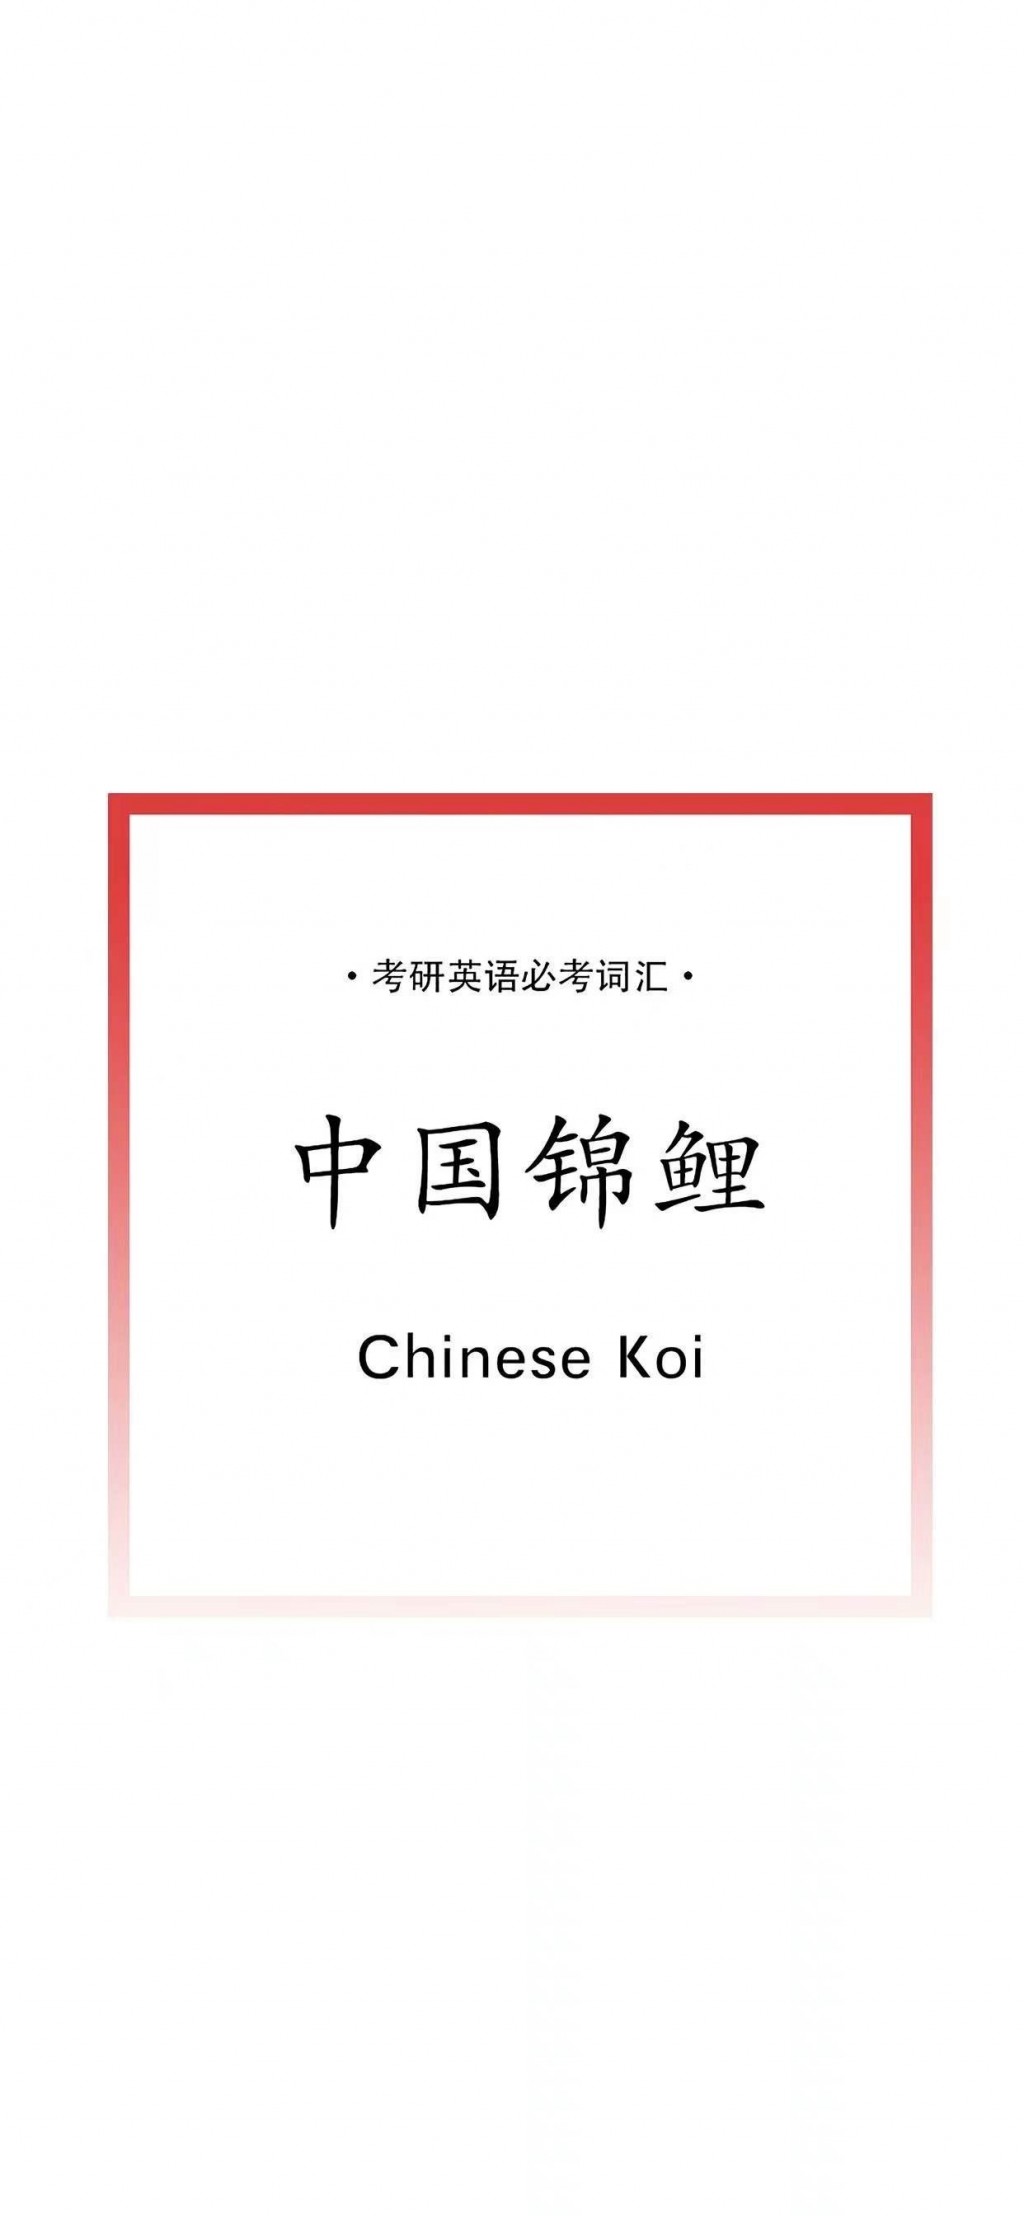 中国锦鲤英文单词手机壁纸